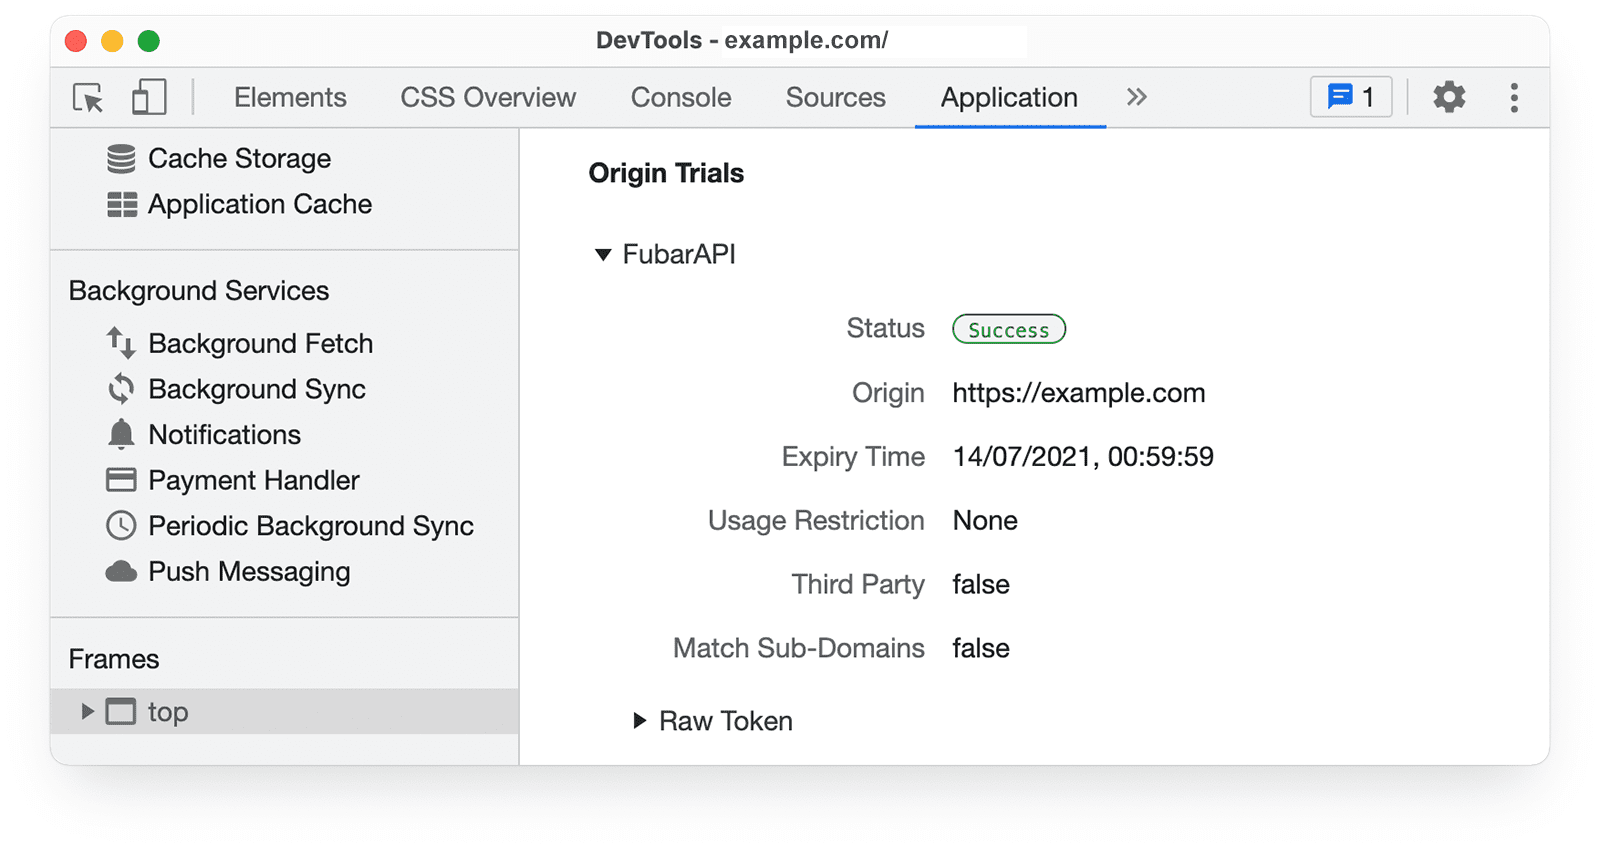 DevTools Chrome 
informasi uji coba origin pada panel Application.